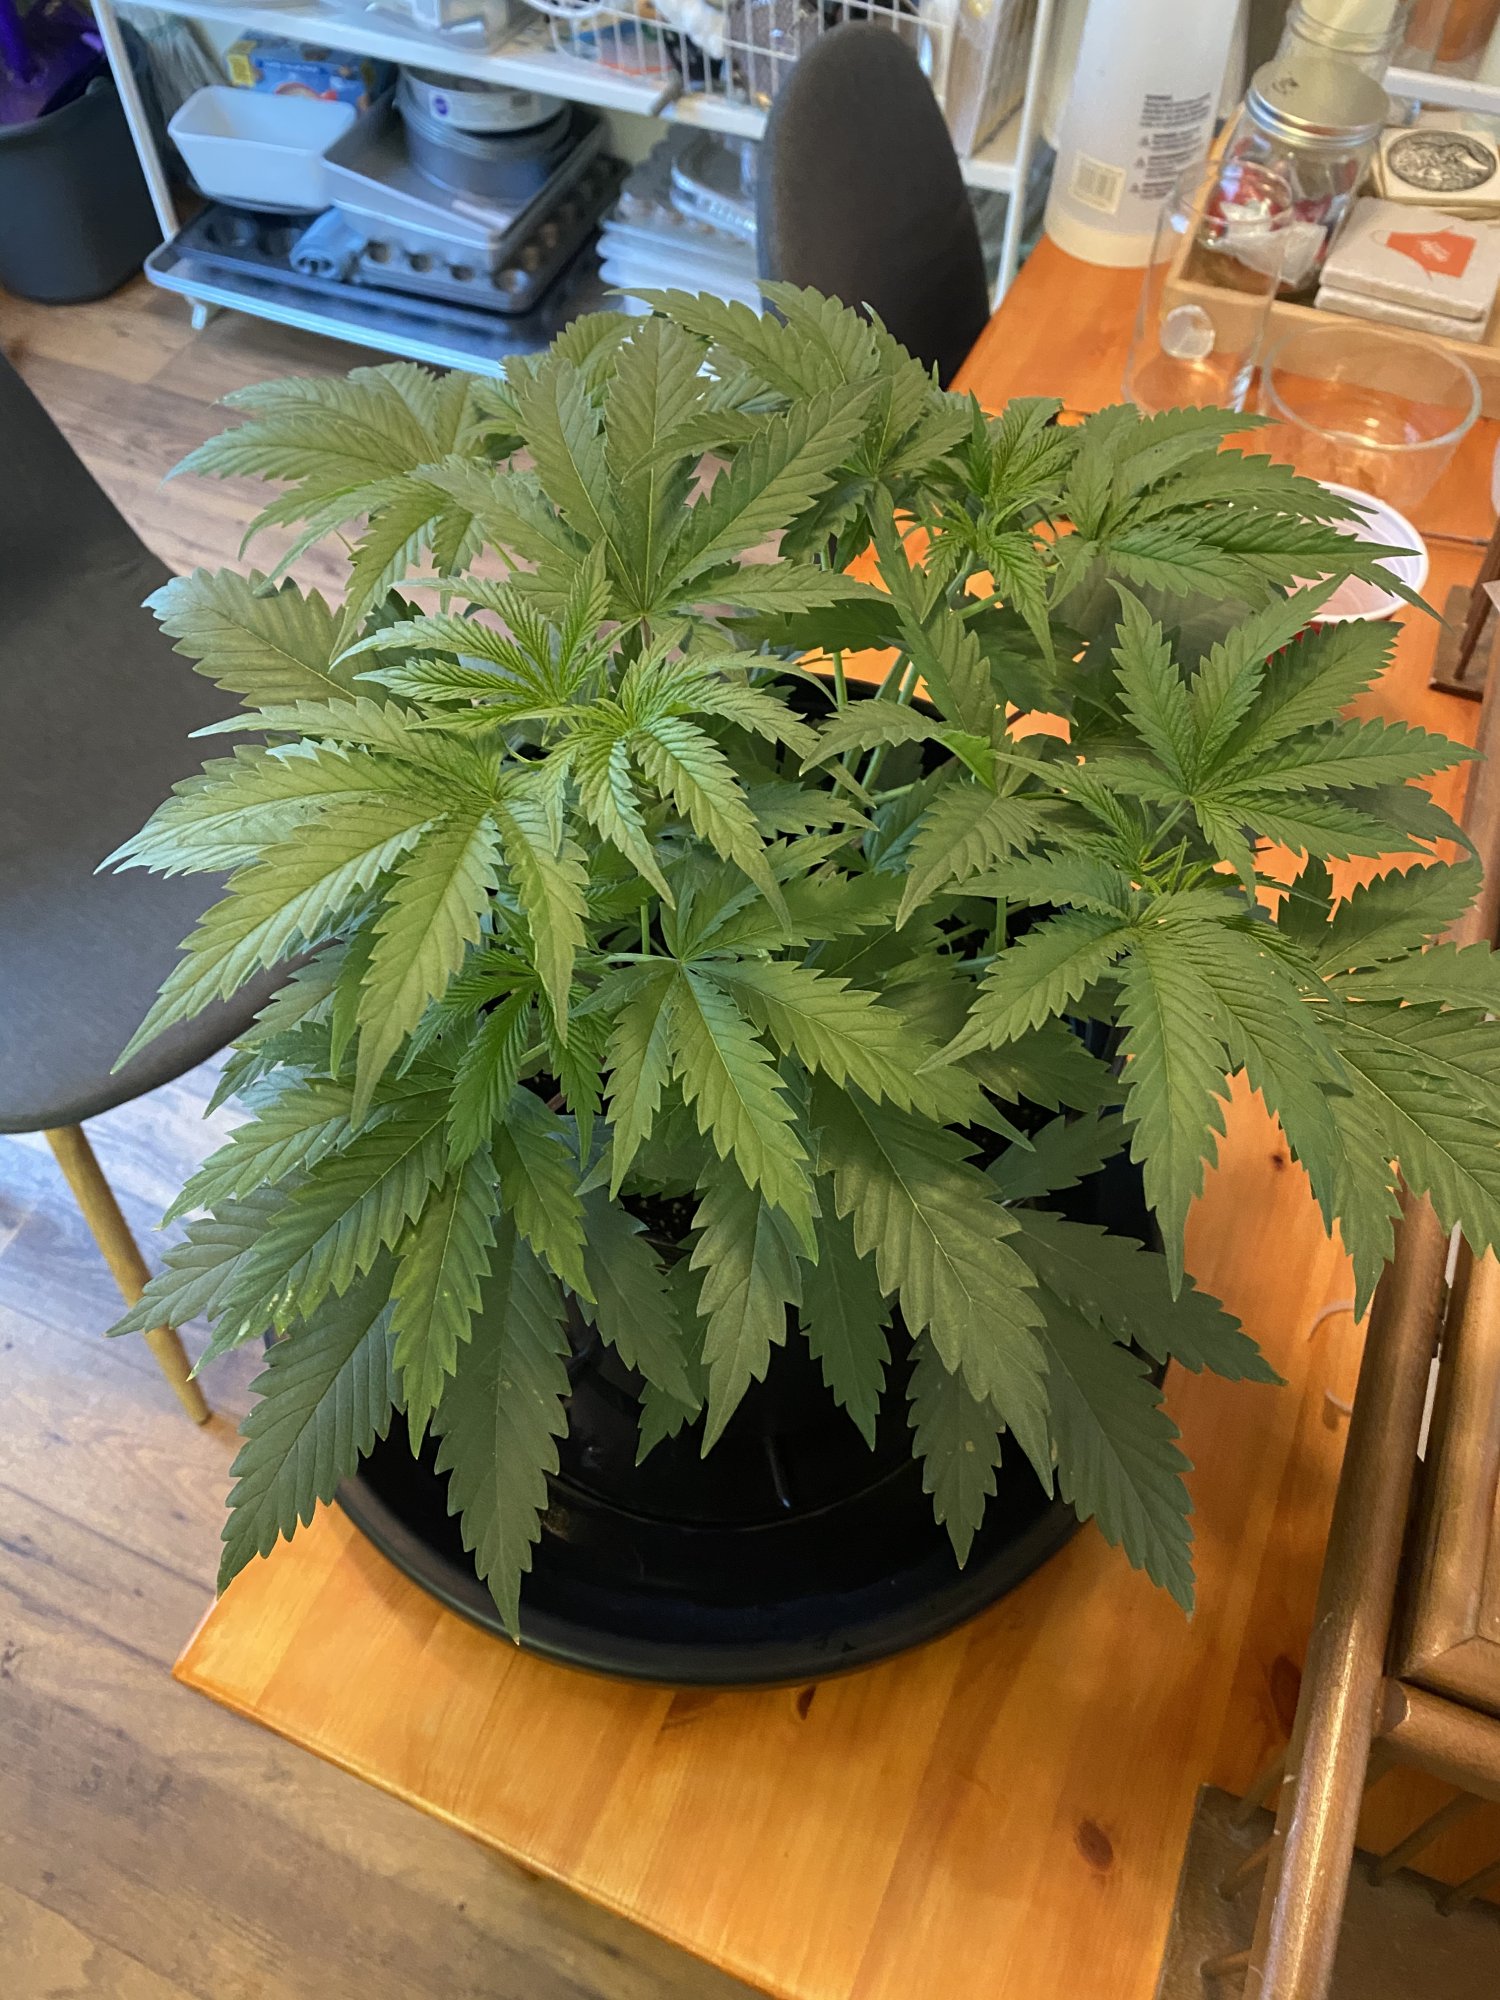 New grower   first grow update 2